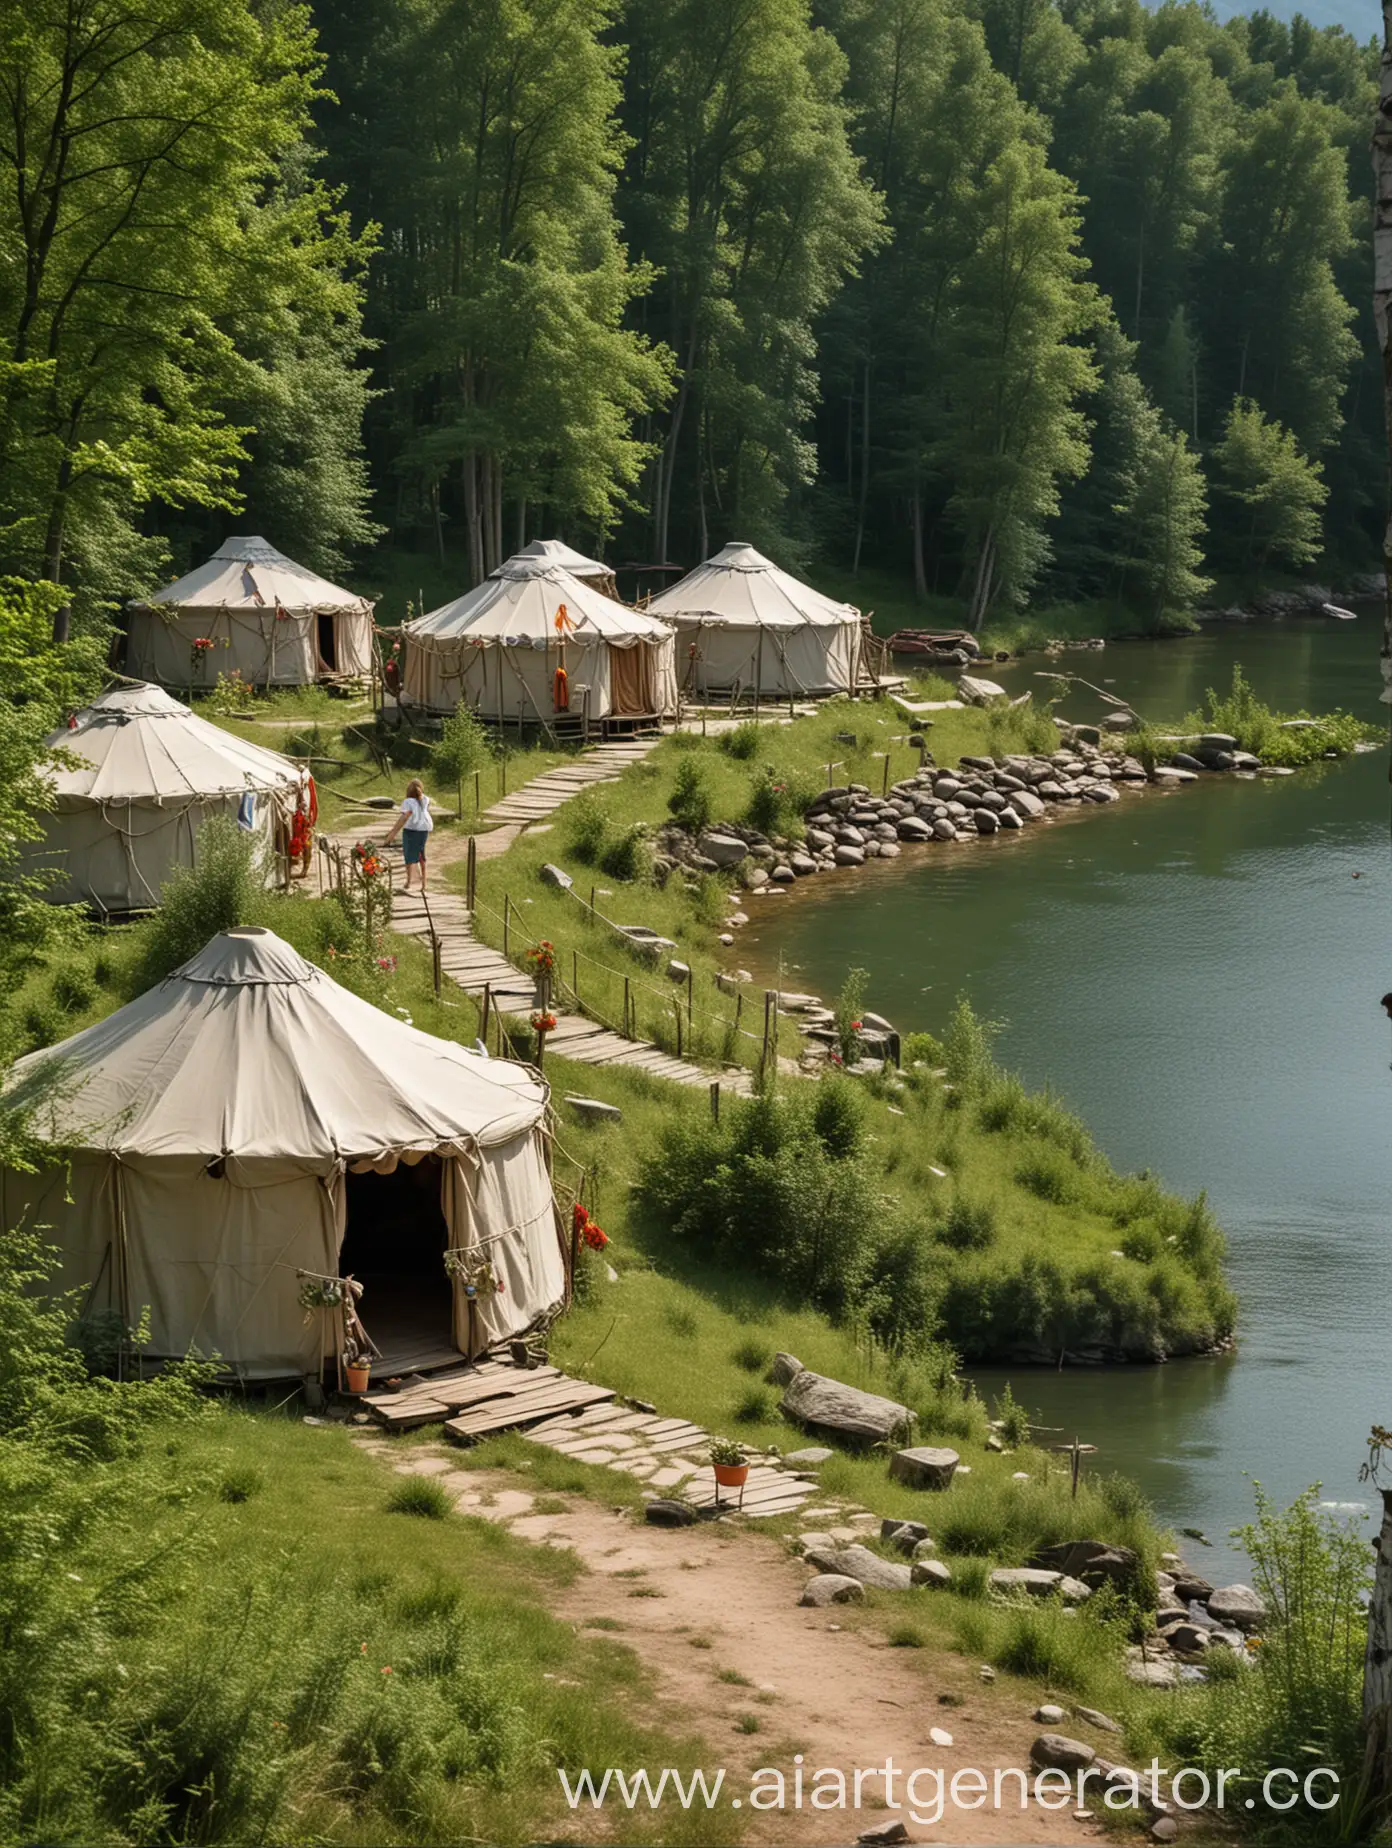 нарисуй туристический лагерь, туристы одеты в льняную одежду, девушки с венками, лагерь состоит из нескольких юрт, лагерь находится в лесу у озера, в лагере есть баня
